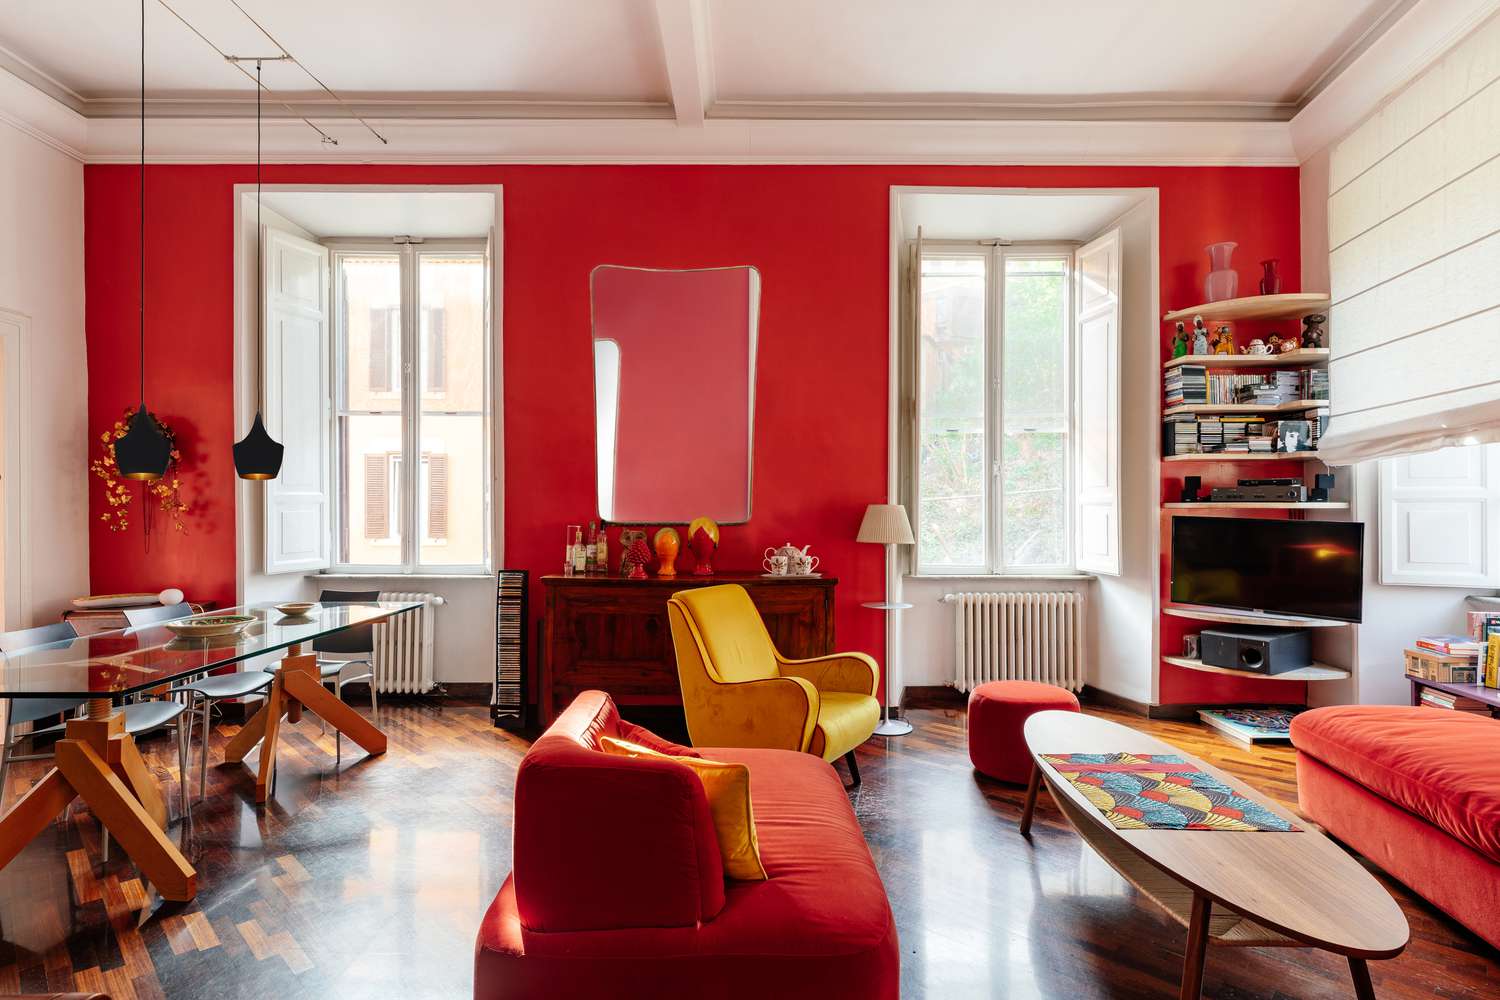 Luz natural llenando habitación pintada de rojo con dos ventanas